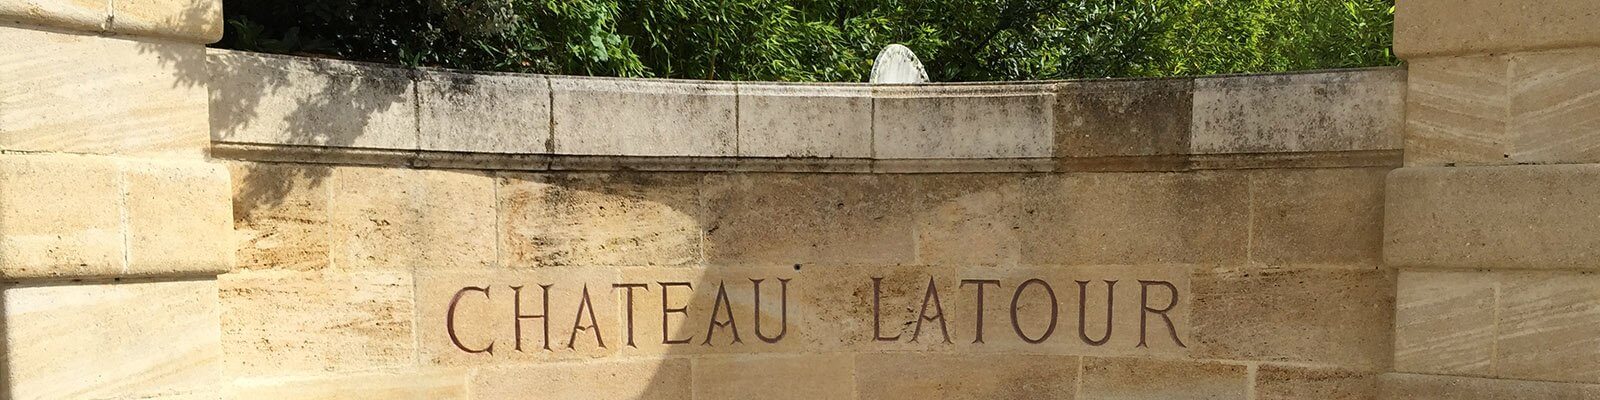 Onze collectie Château Latour - Vind deze bij Onshore Cellars, uw leverancier van jachtwijnen